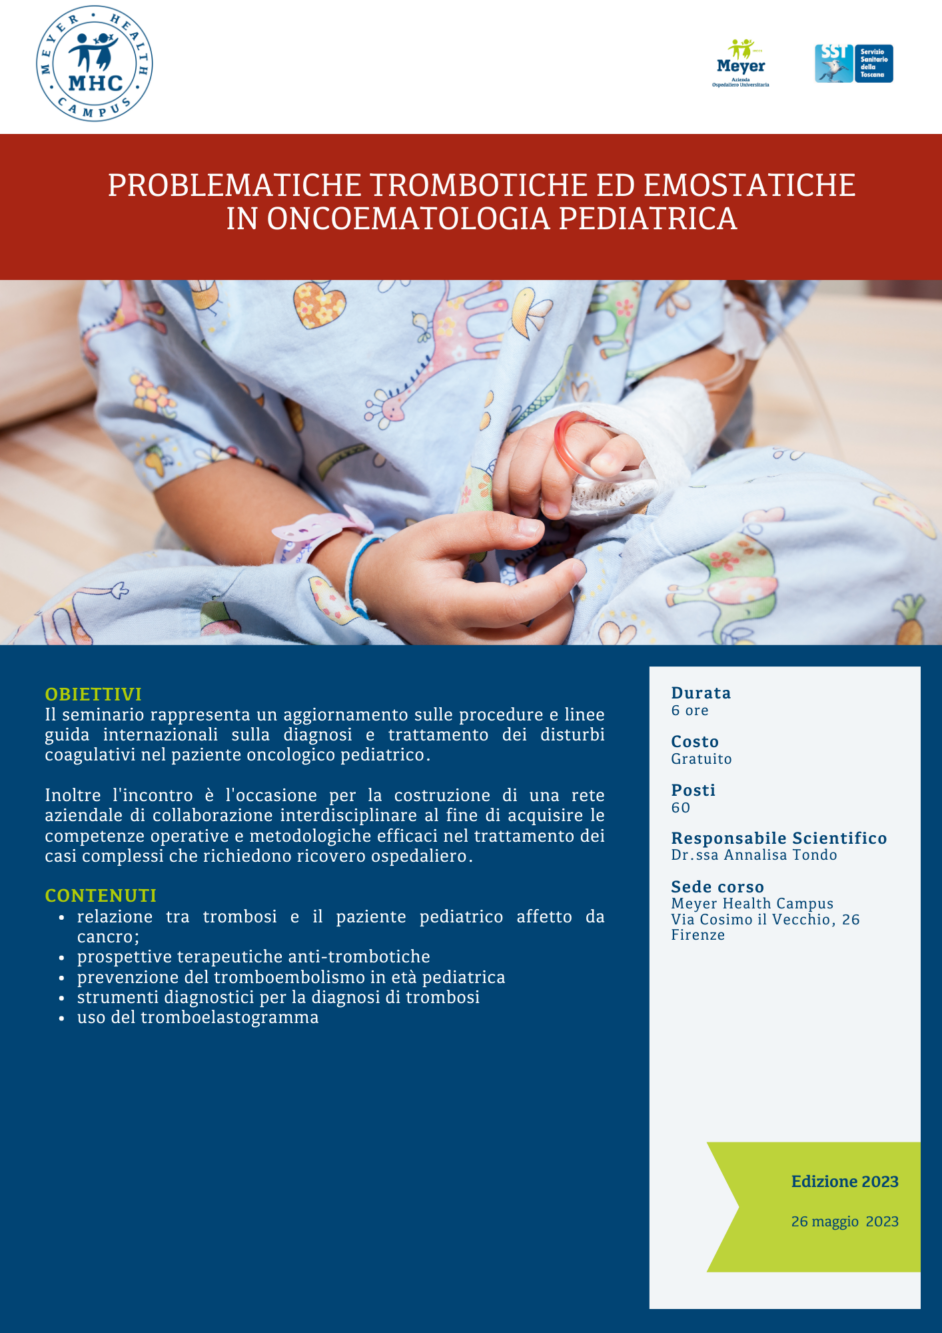 Problematiche trombotiche ed emostatiche in oncoematologia pediatrica (26 maggio 2023)